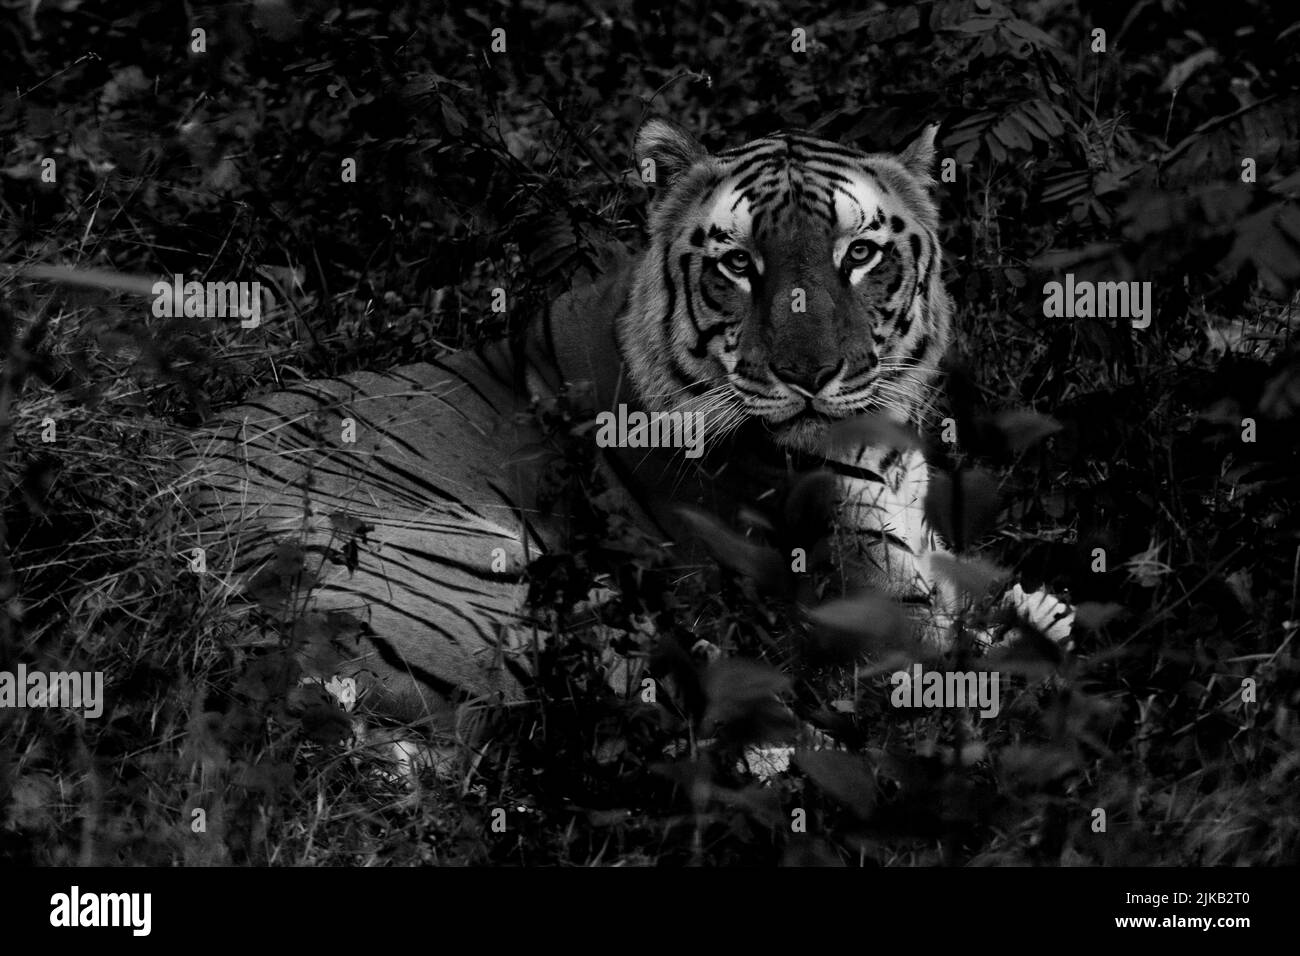 Un ritratto in bianco e nero di una tigre bengala che mostra i suoi motivi mentre trascorre un po' di tempo libero nel suo fogliame. Foto Stock